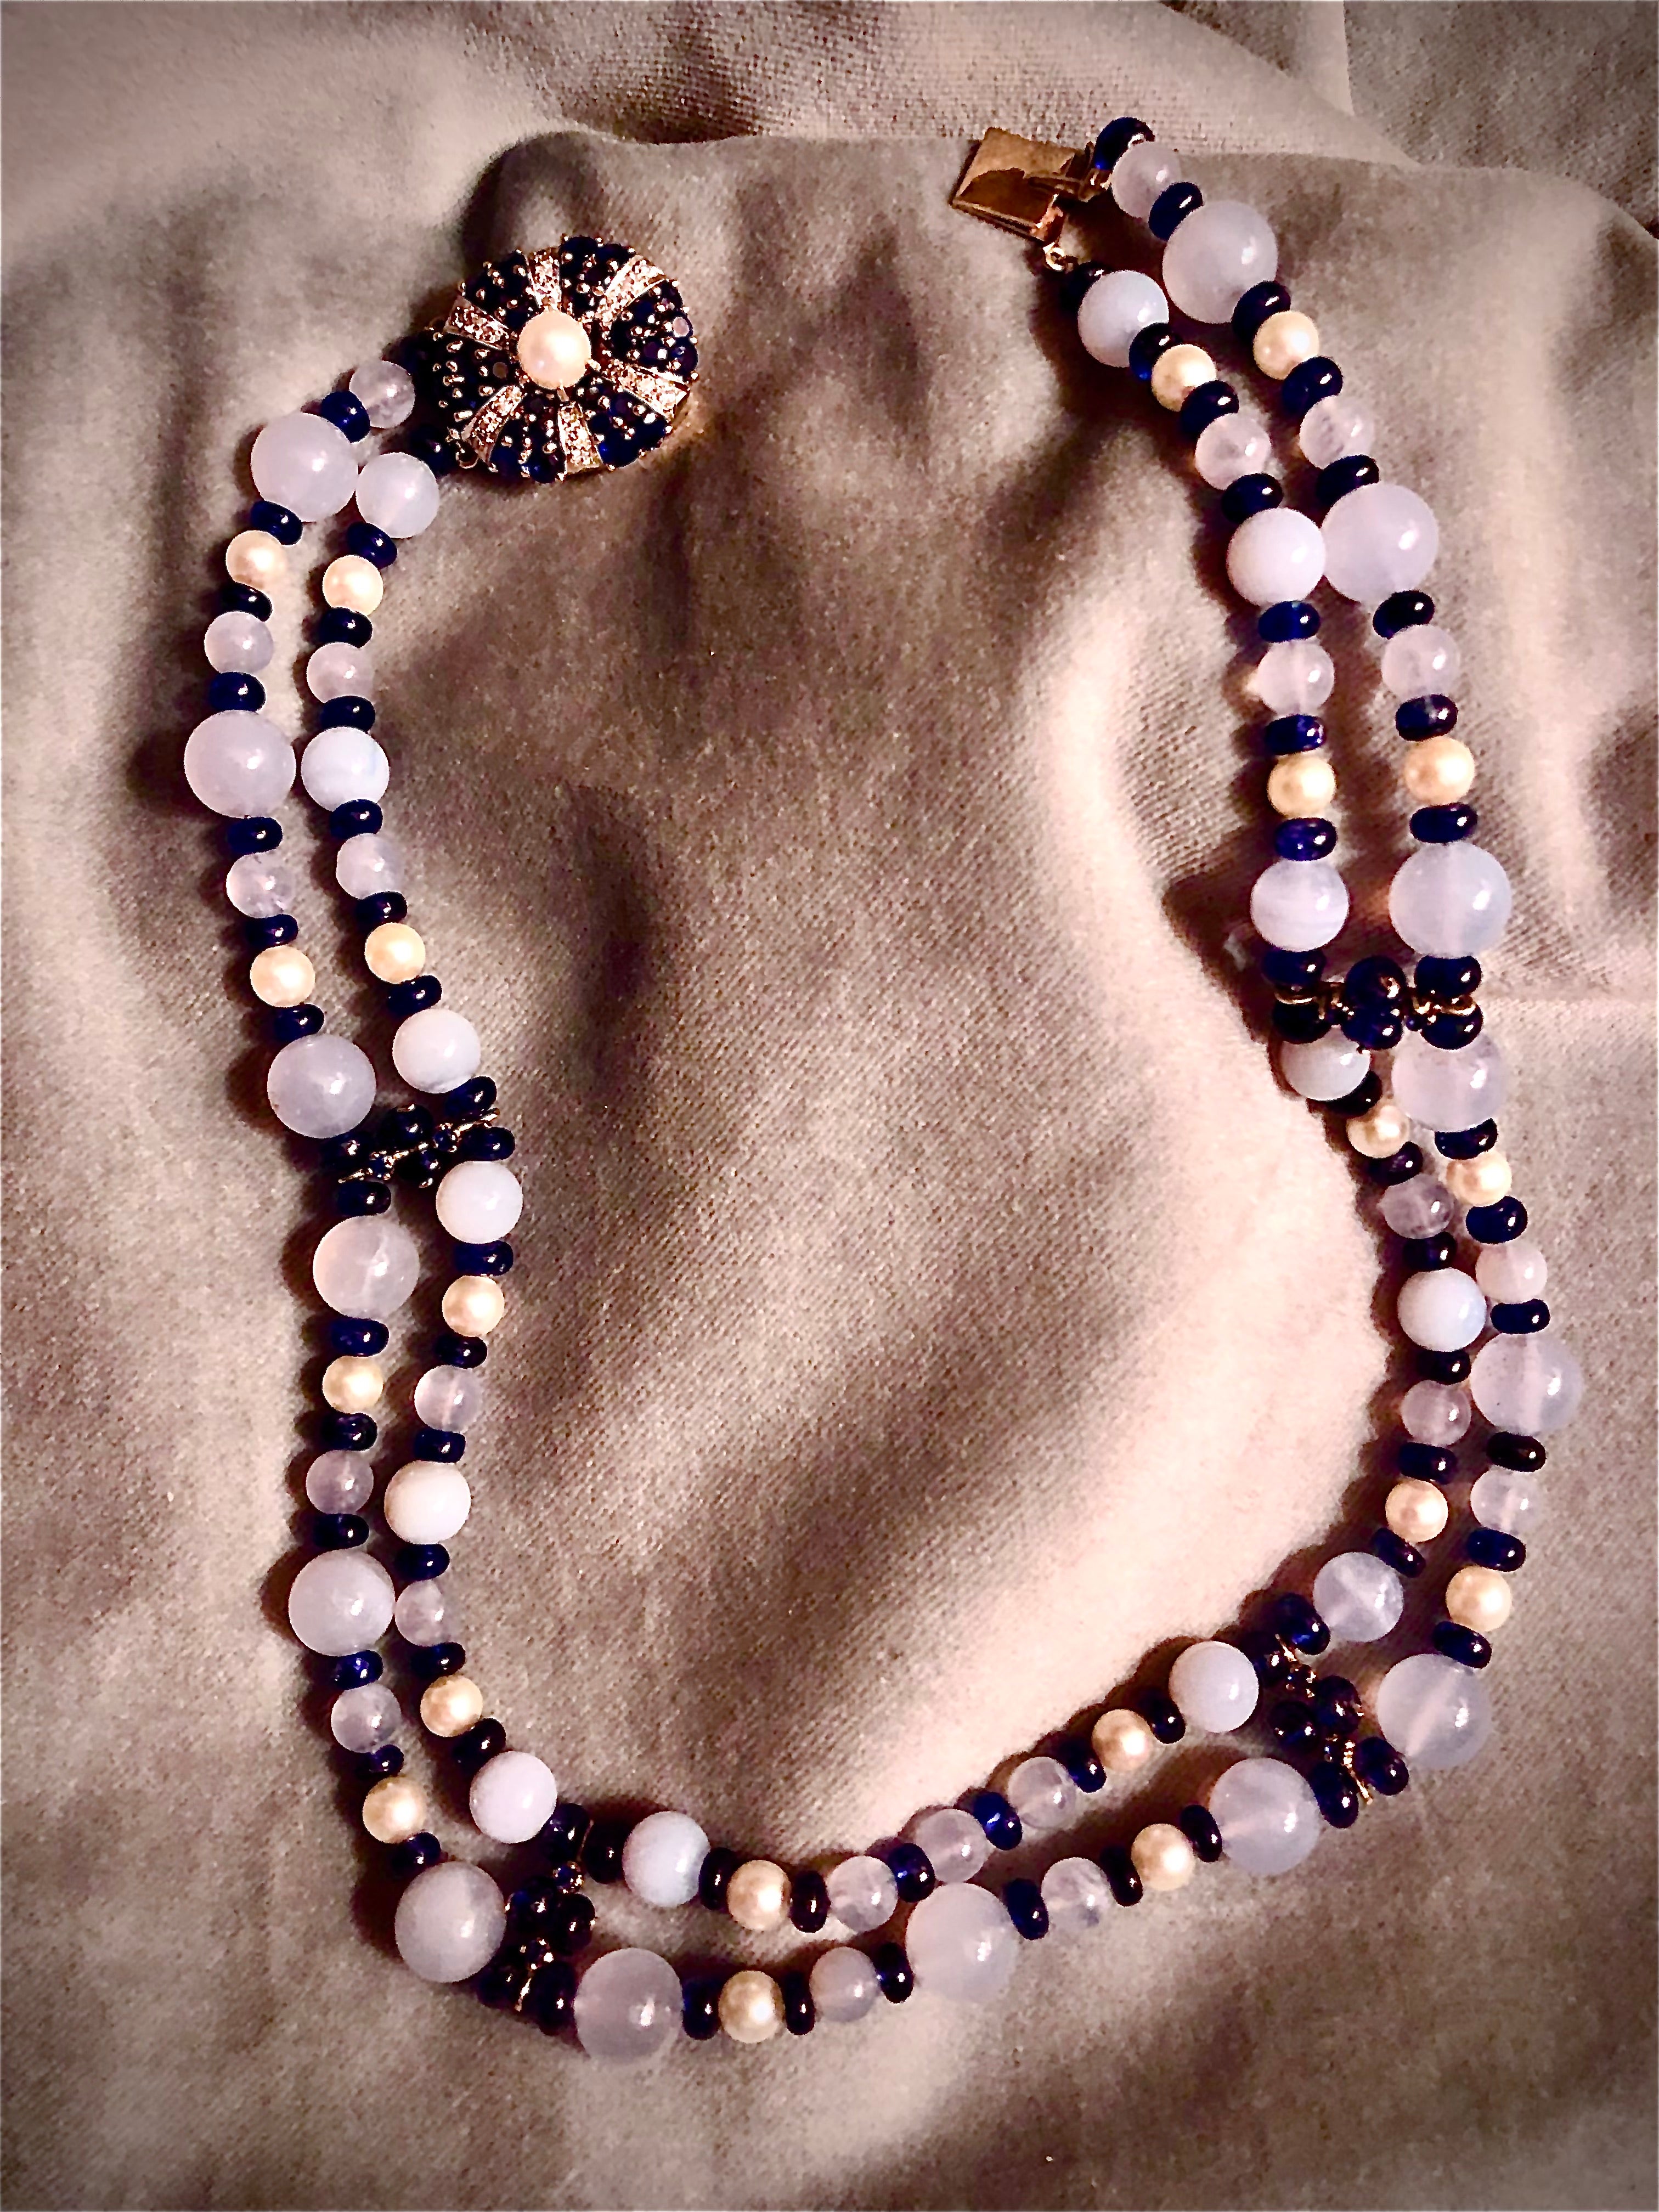 Les perles de calcédoine bleue translucide sont flanquées de saphirs bleus ronds et lisses qui sont ensuite centrés sur des perles de culture rondes d'un blanc crémeux. Les deux rangs de perles somptueuses sont séparés par des séparateurs en or